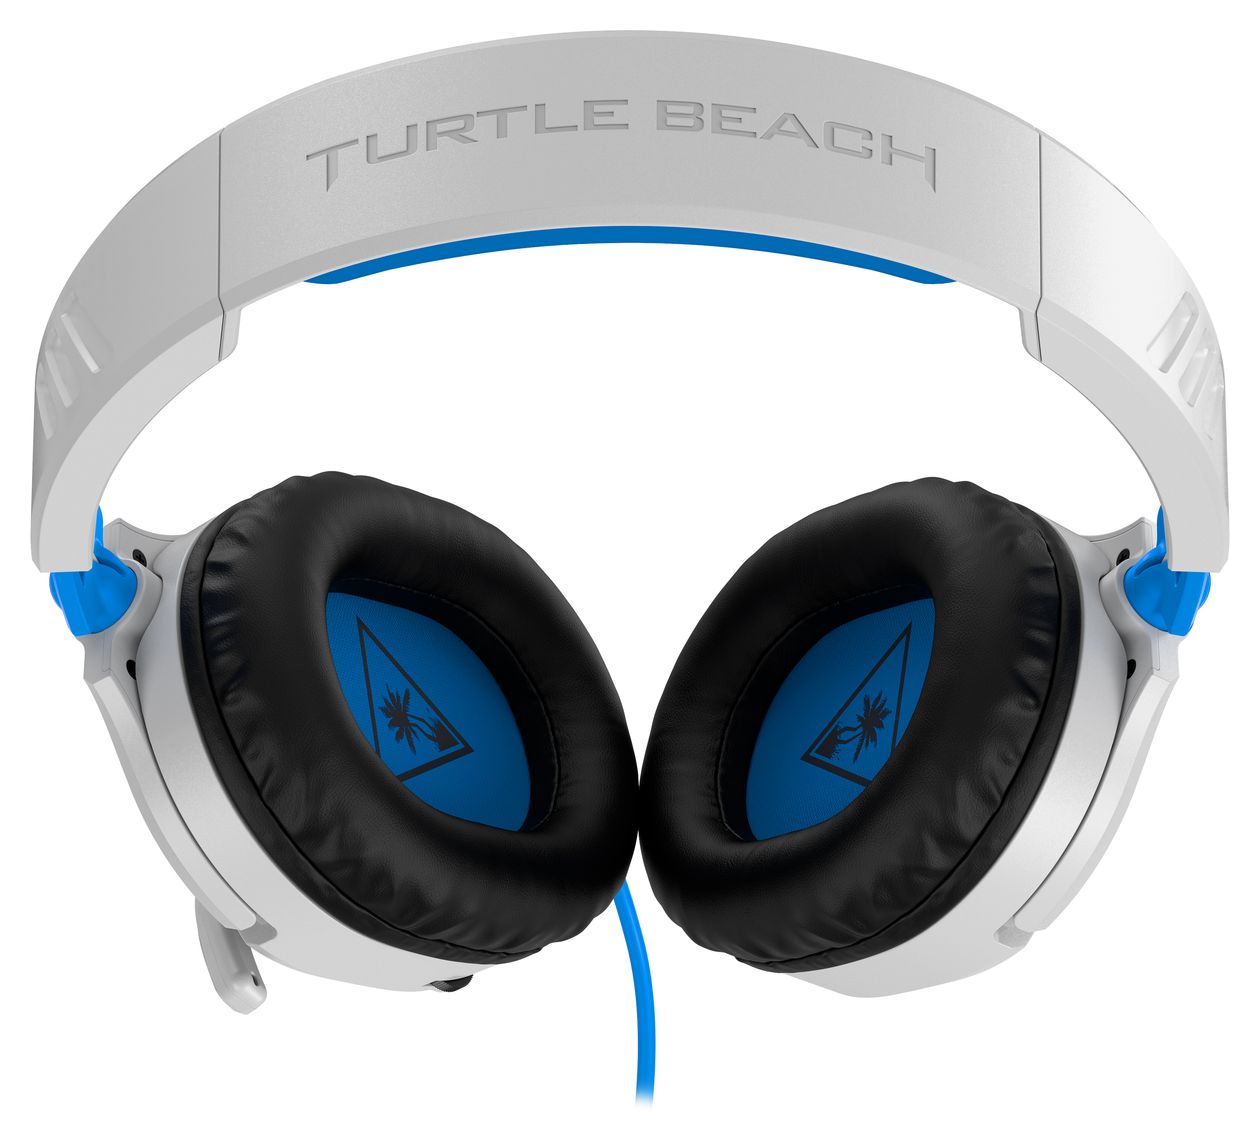 Turtle Beach ONE, 70 SWITCH, PS4 MOBILE Blau, Kabelgebunden von PRO,XBOX PS4, (Schwarz, Weiß) NINTENDO Technomarkt expert Recon Gaming Kopfhörer